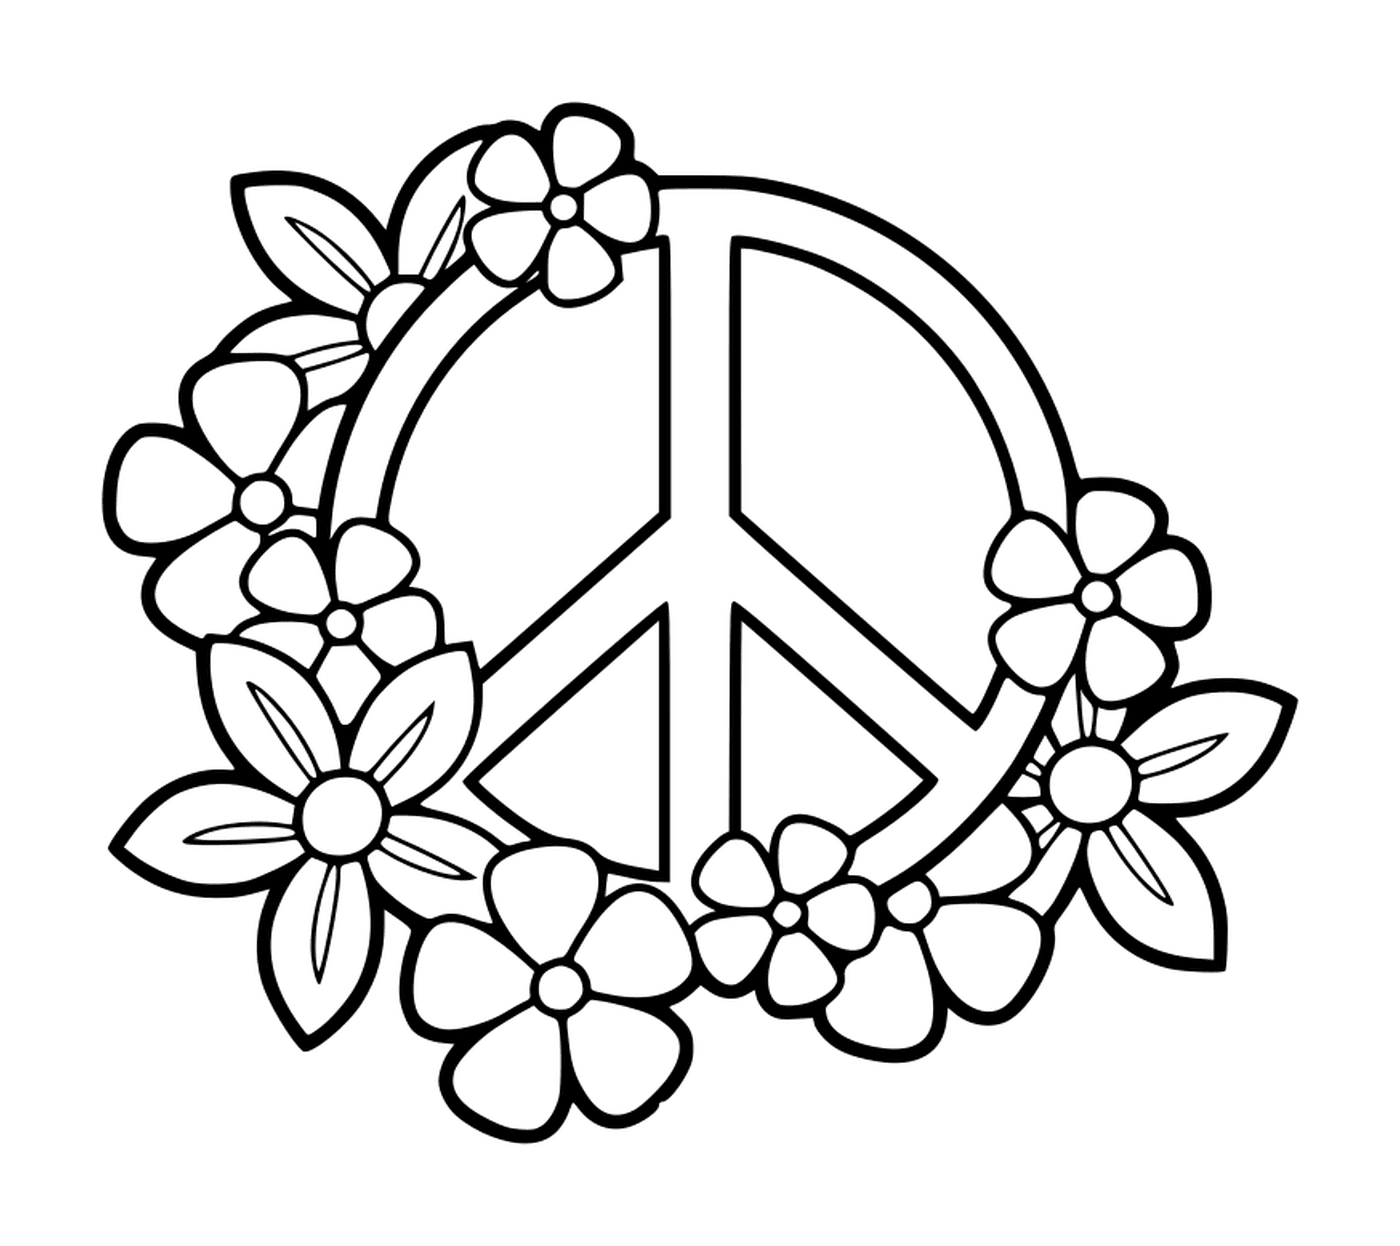   Signe de paix avec des fleurs 